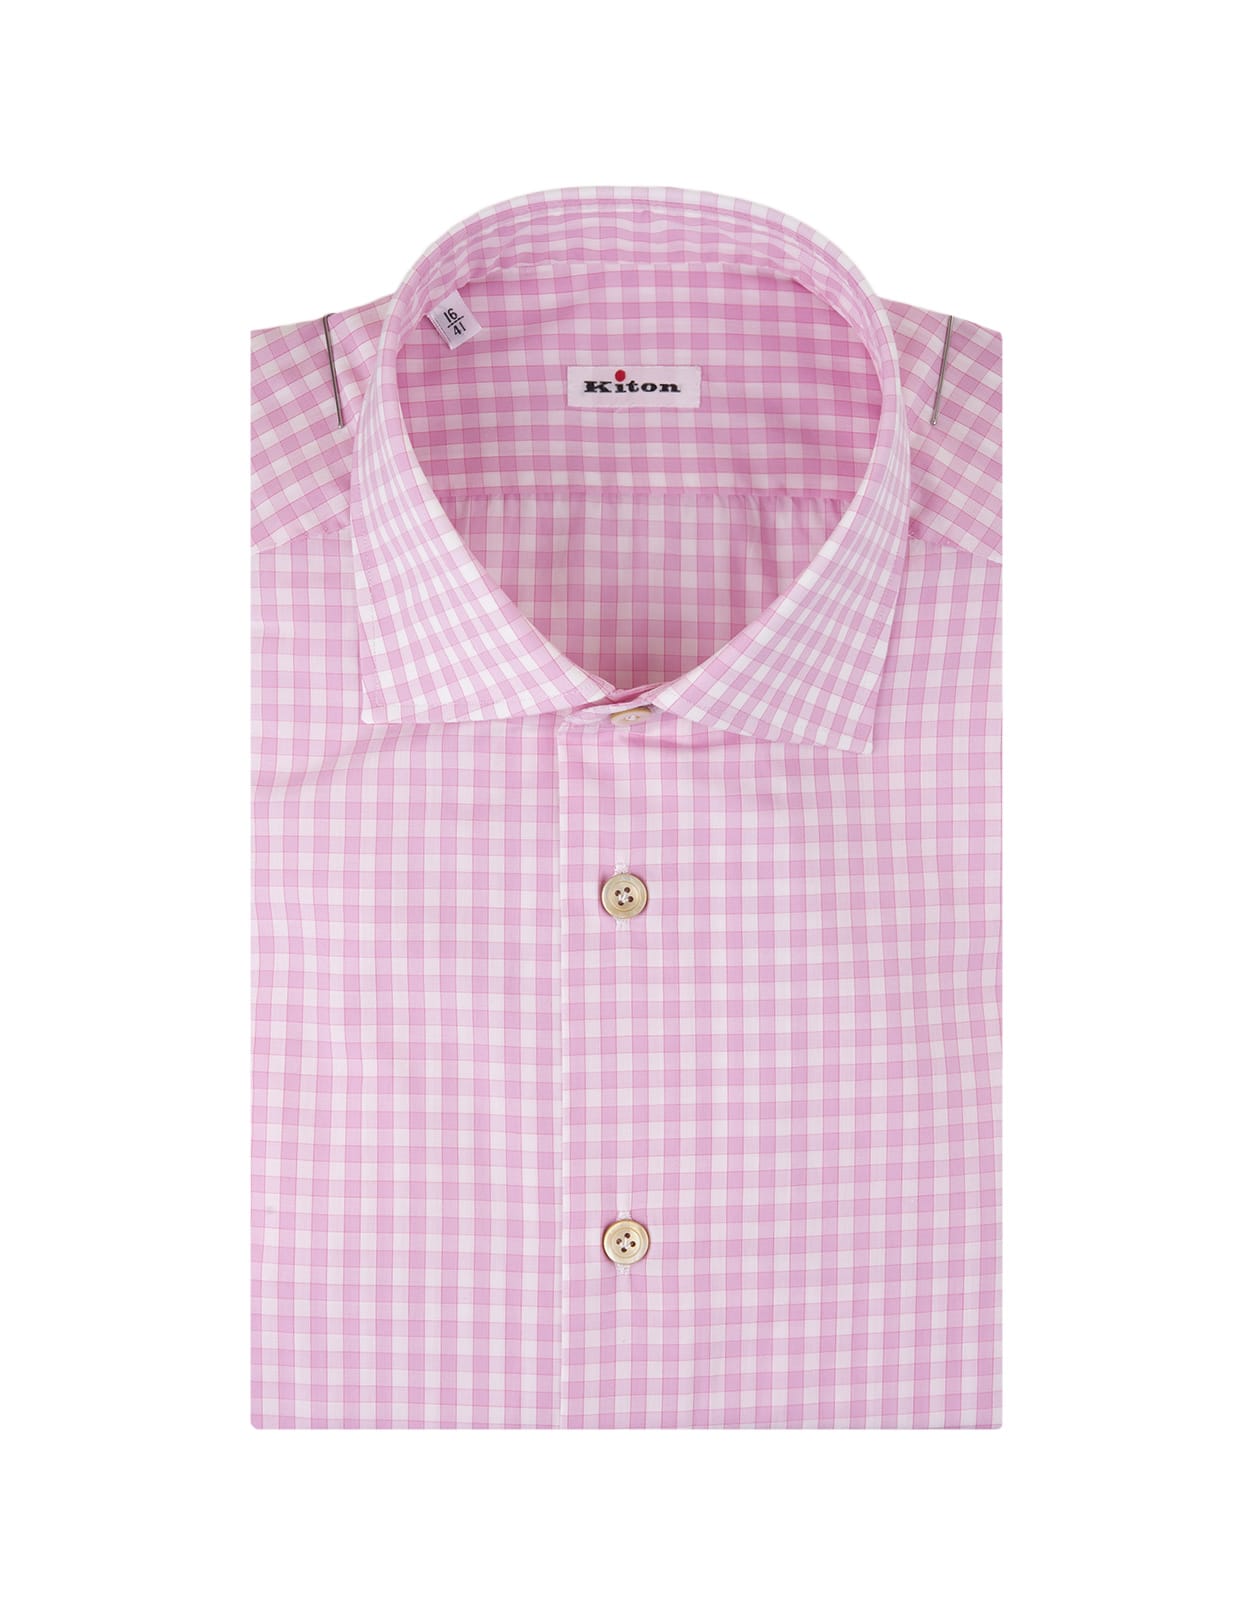 Shop Kiton Pink Check Shirt